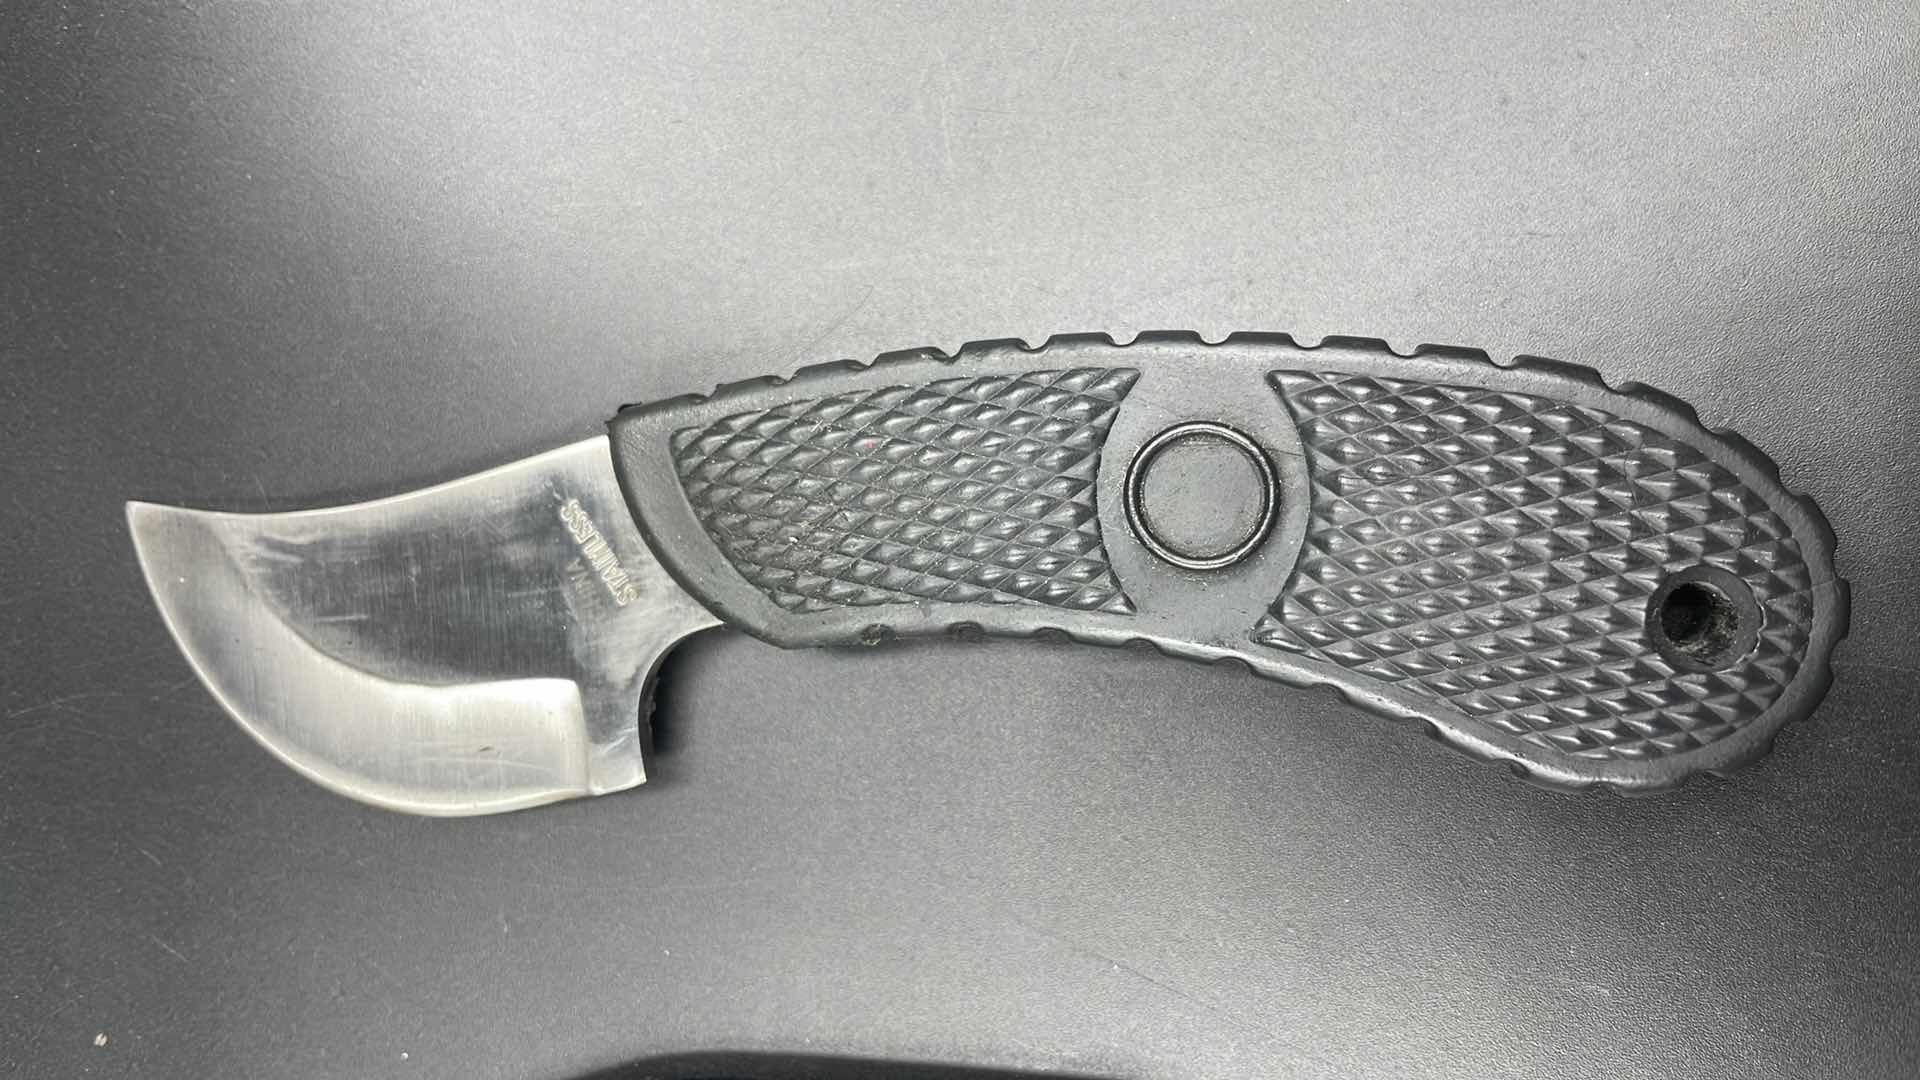 Photo 2 of HUNTING KNIFE 6” W SHEATH